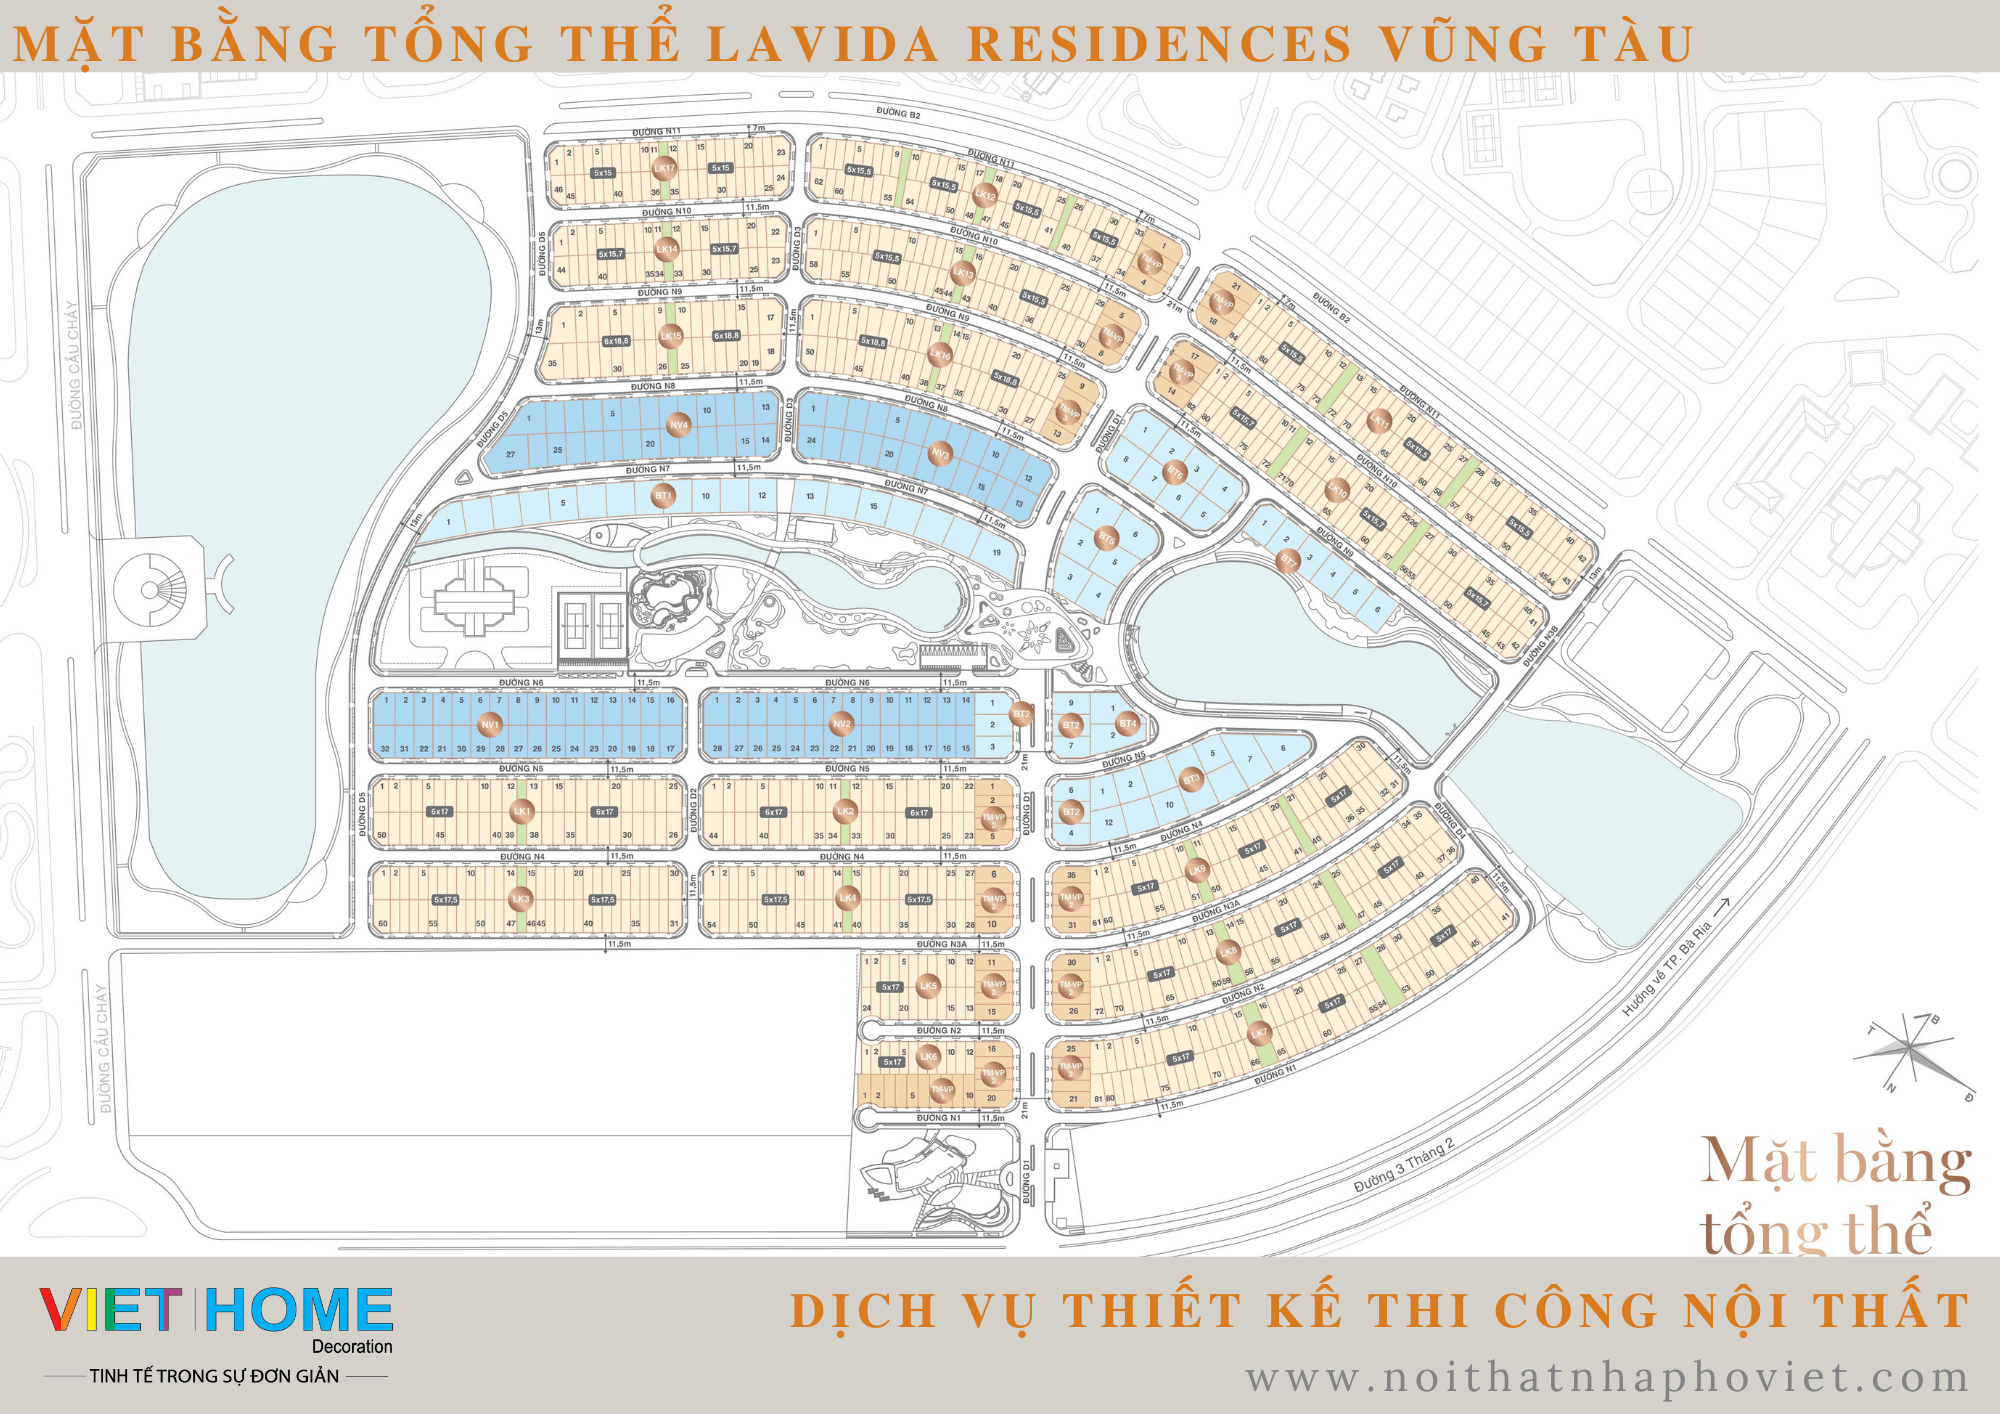 Hình ảnh mặt bằng tổng thể dự án Lavida Residences Vũng Tàu